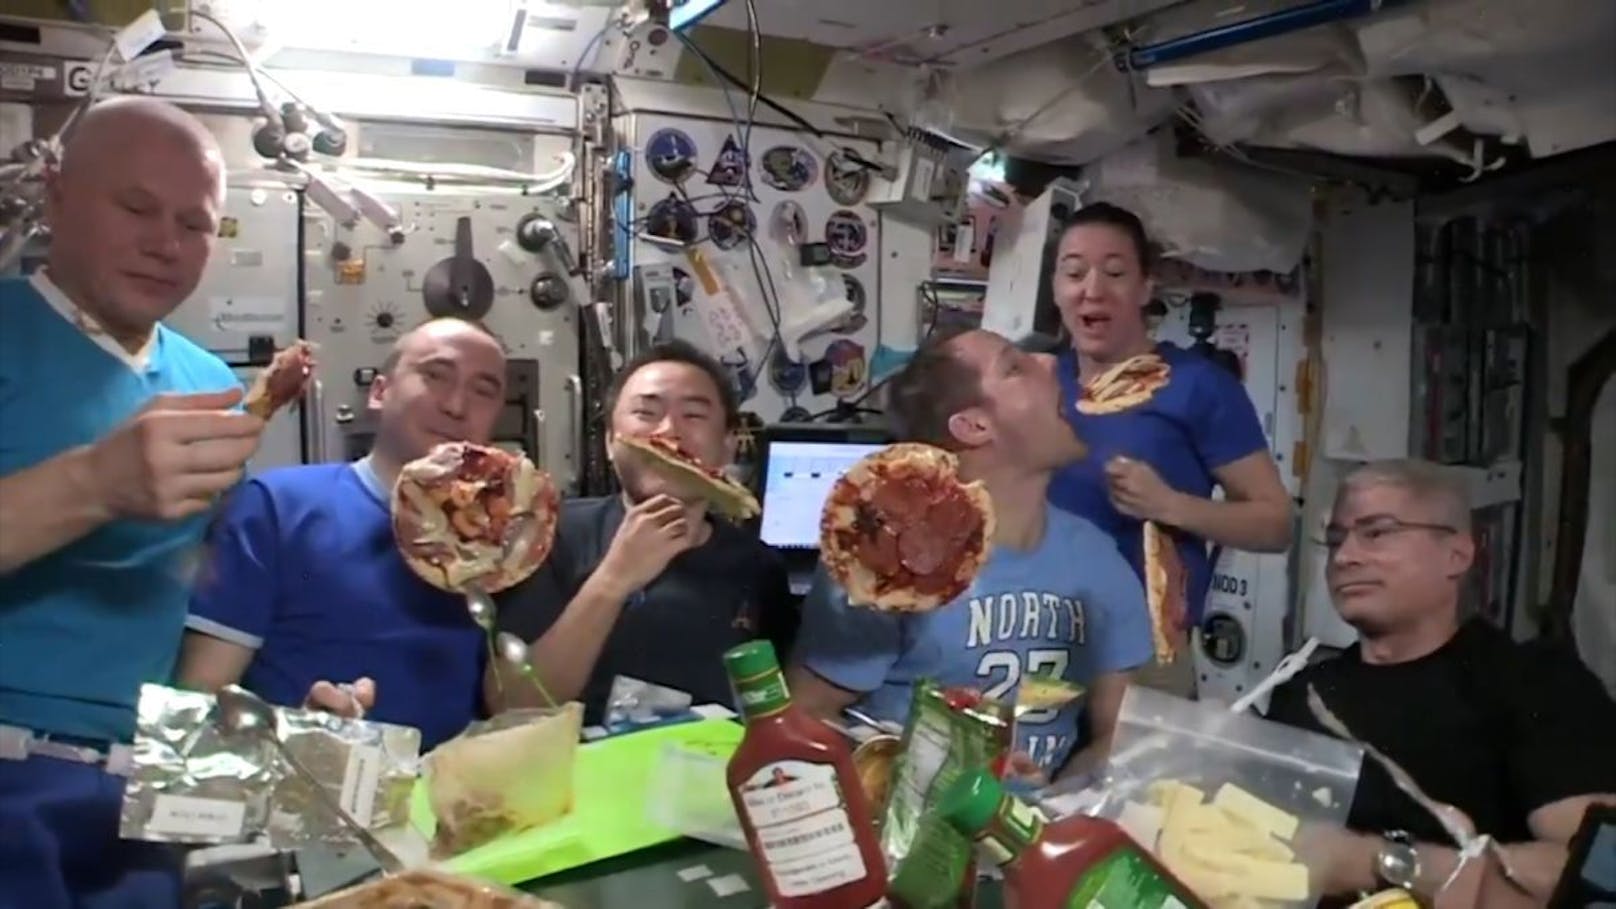 Das gibt es im Orbit nicht oft: Die ISS-Besatzung durften sich mit echtem Essen eine Pizza machen und hielten die Party auf Video fest.